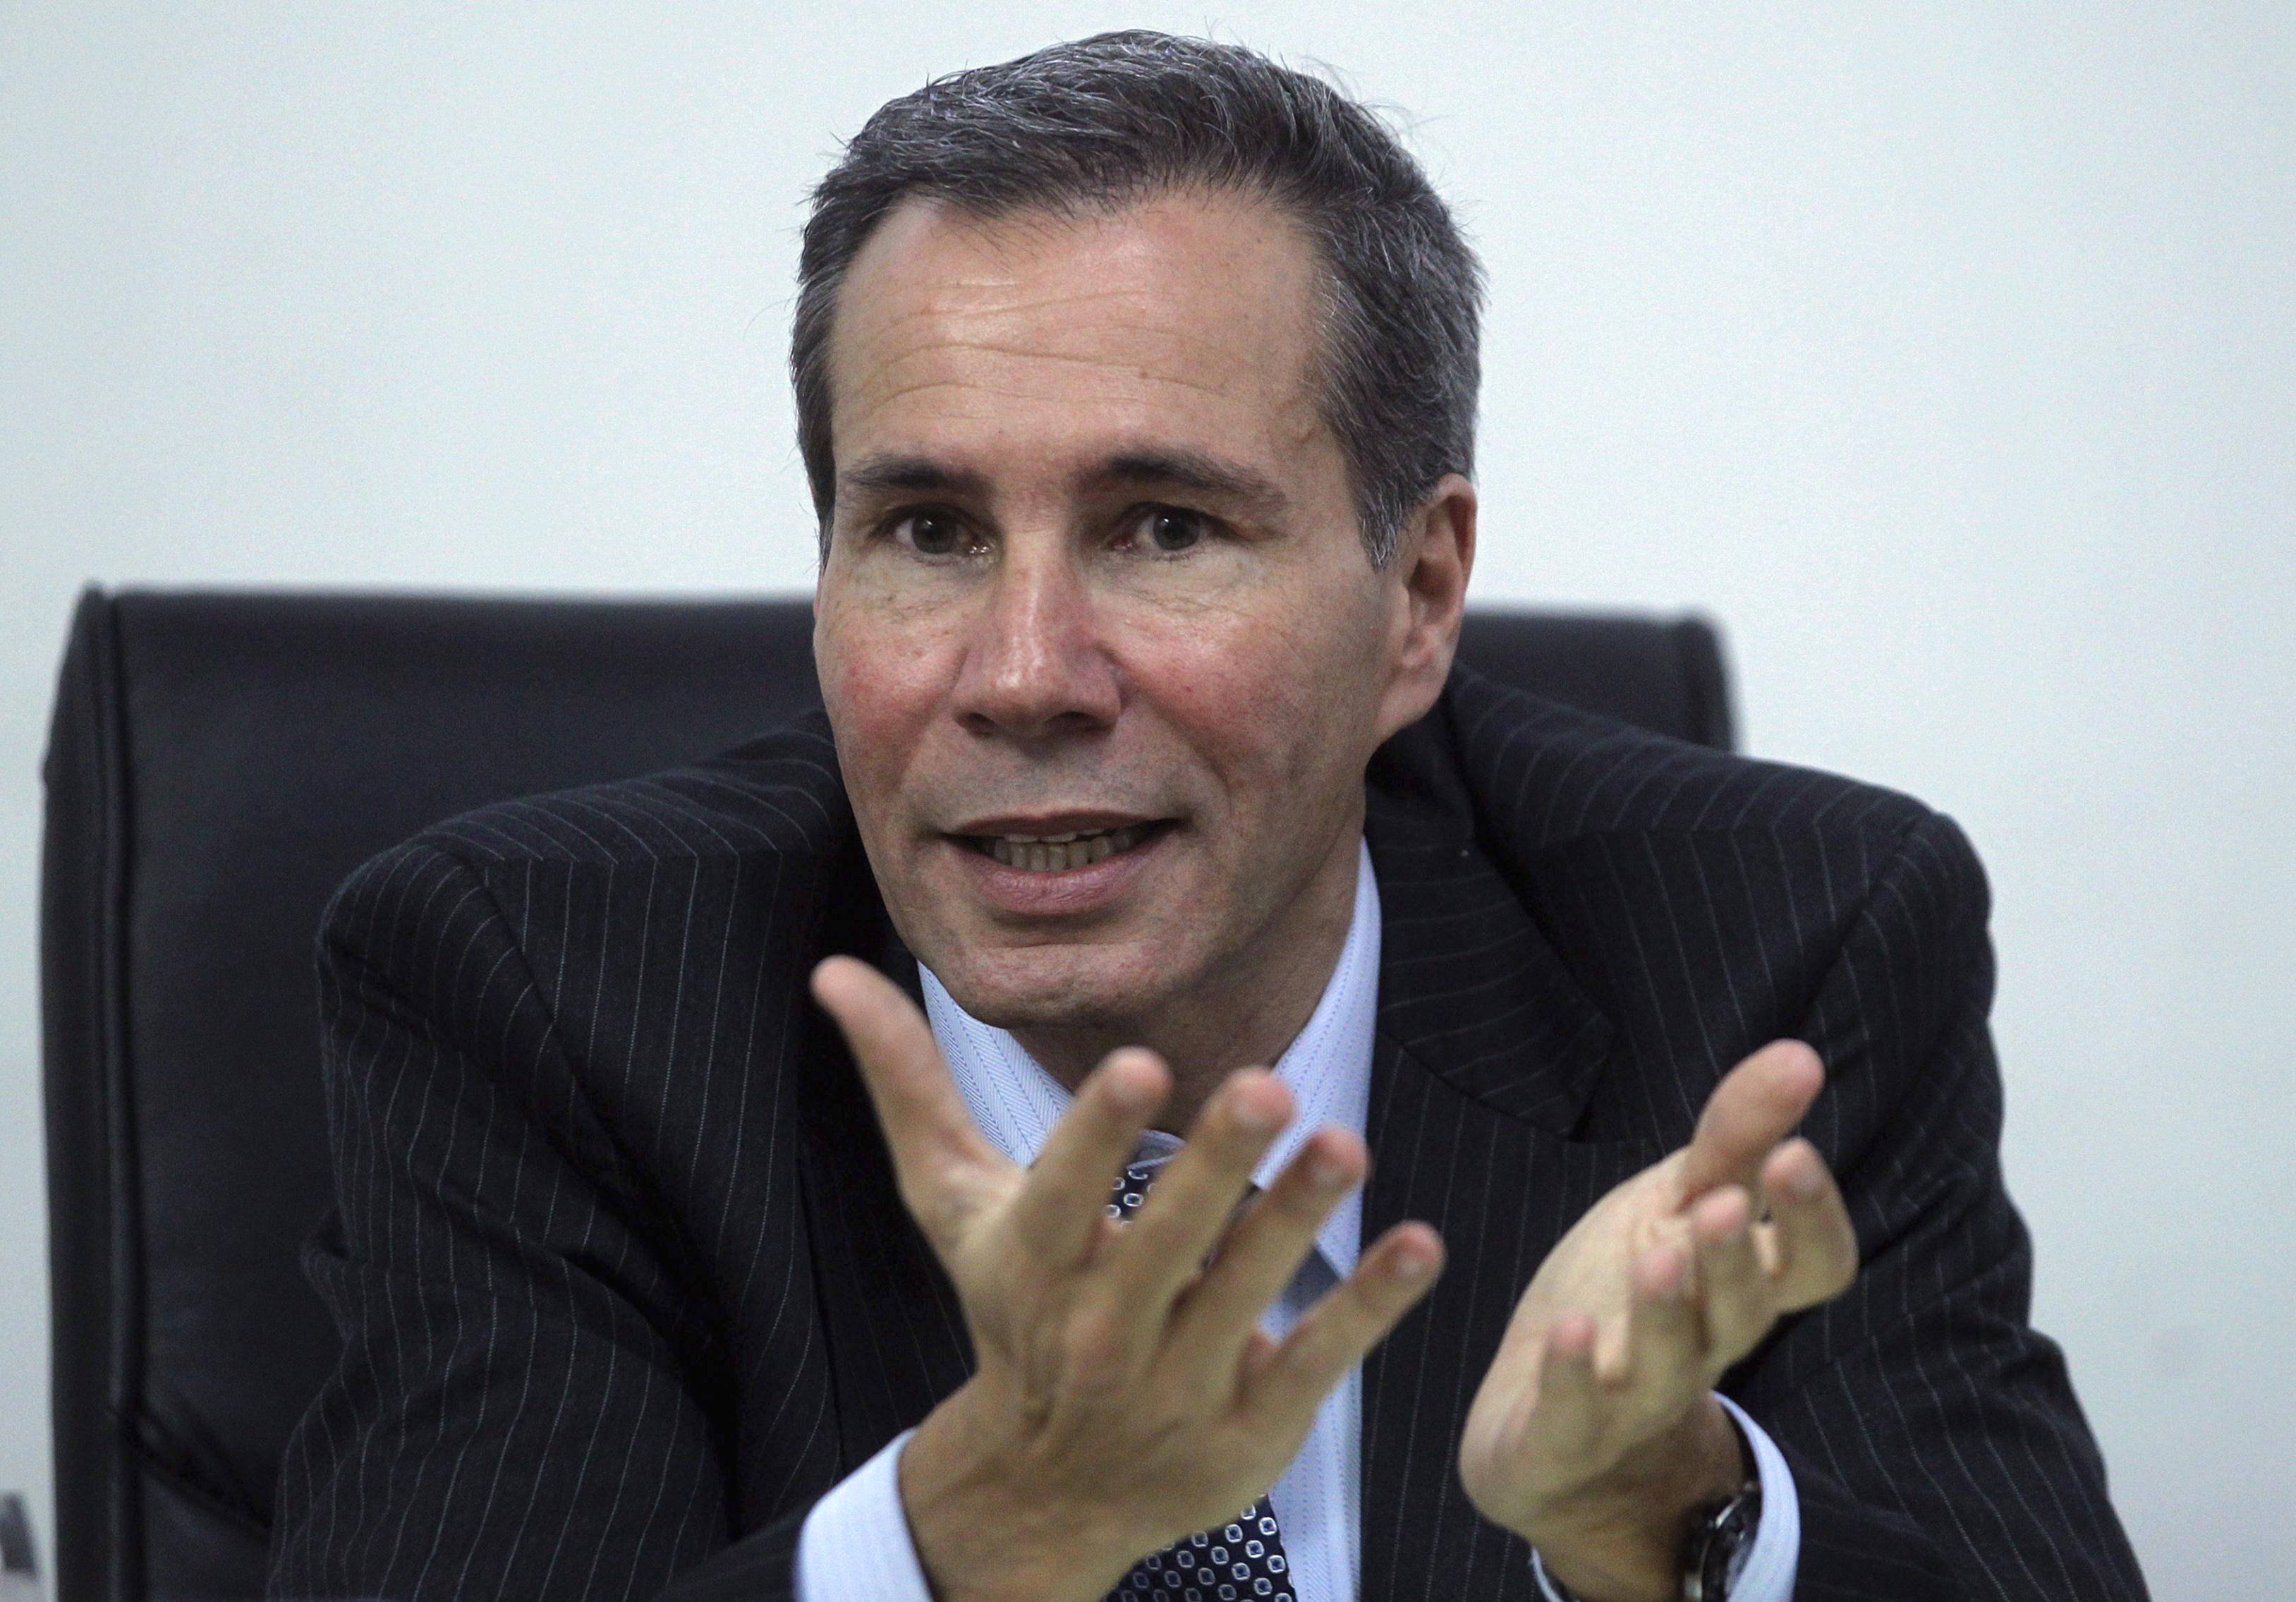 “Yo puedo salir muerto de esto”, había declarado Nisman a la prensa argentina